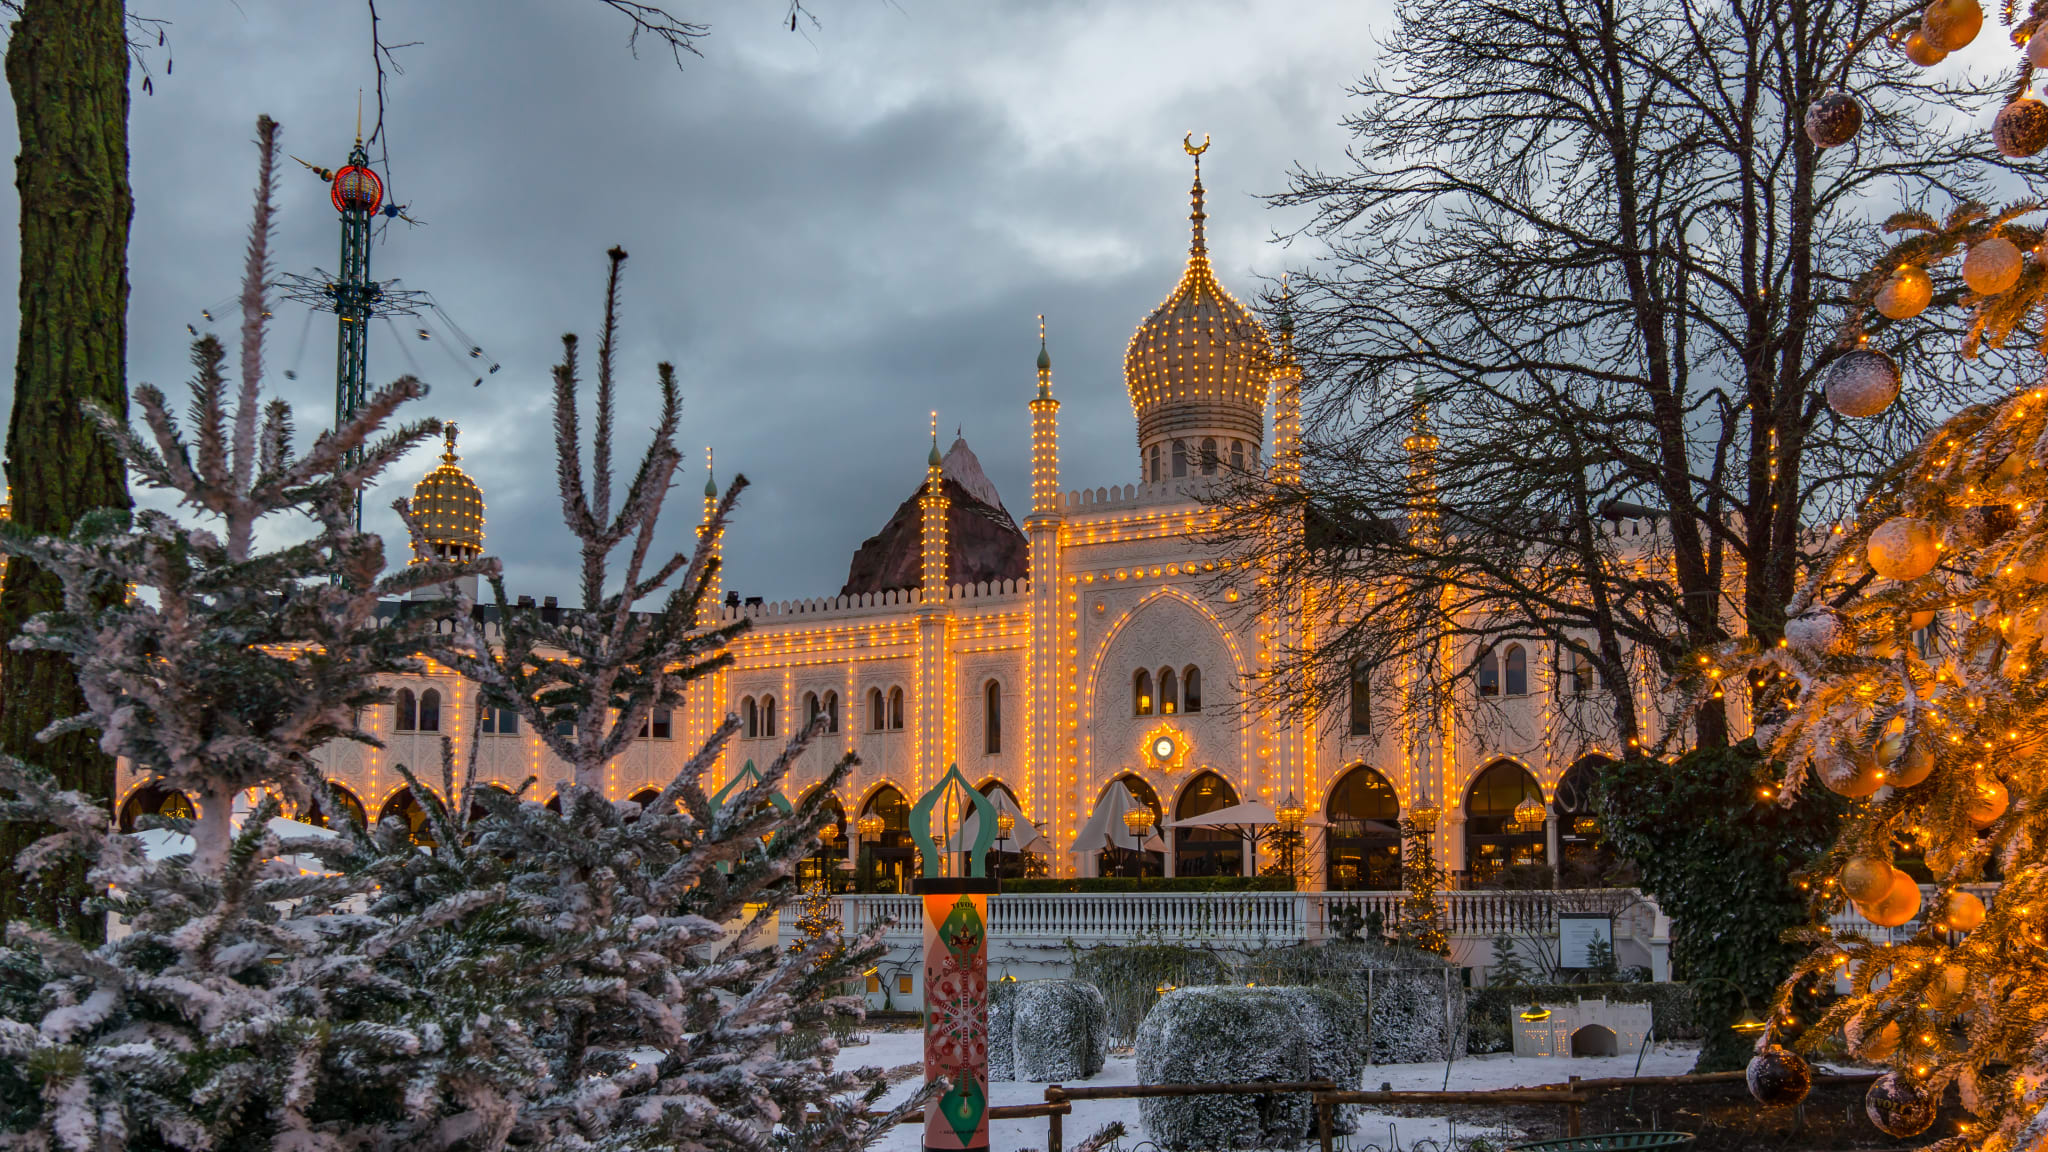 Weihnachtsdekoration im maurischen Palast in Tivoli Garten©/ stigalenas/ iStock Editorial / Getty Images Plus via Getty Images